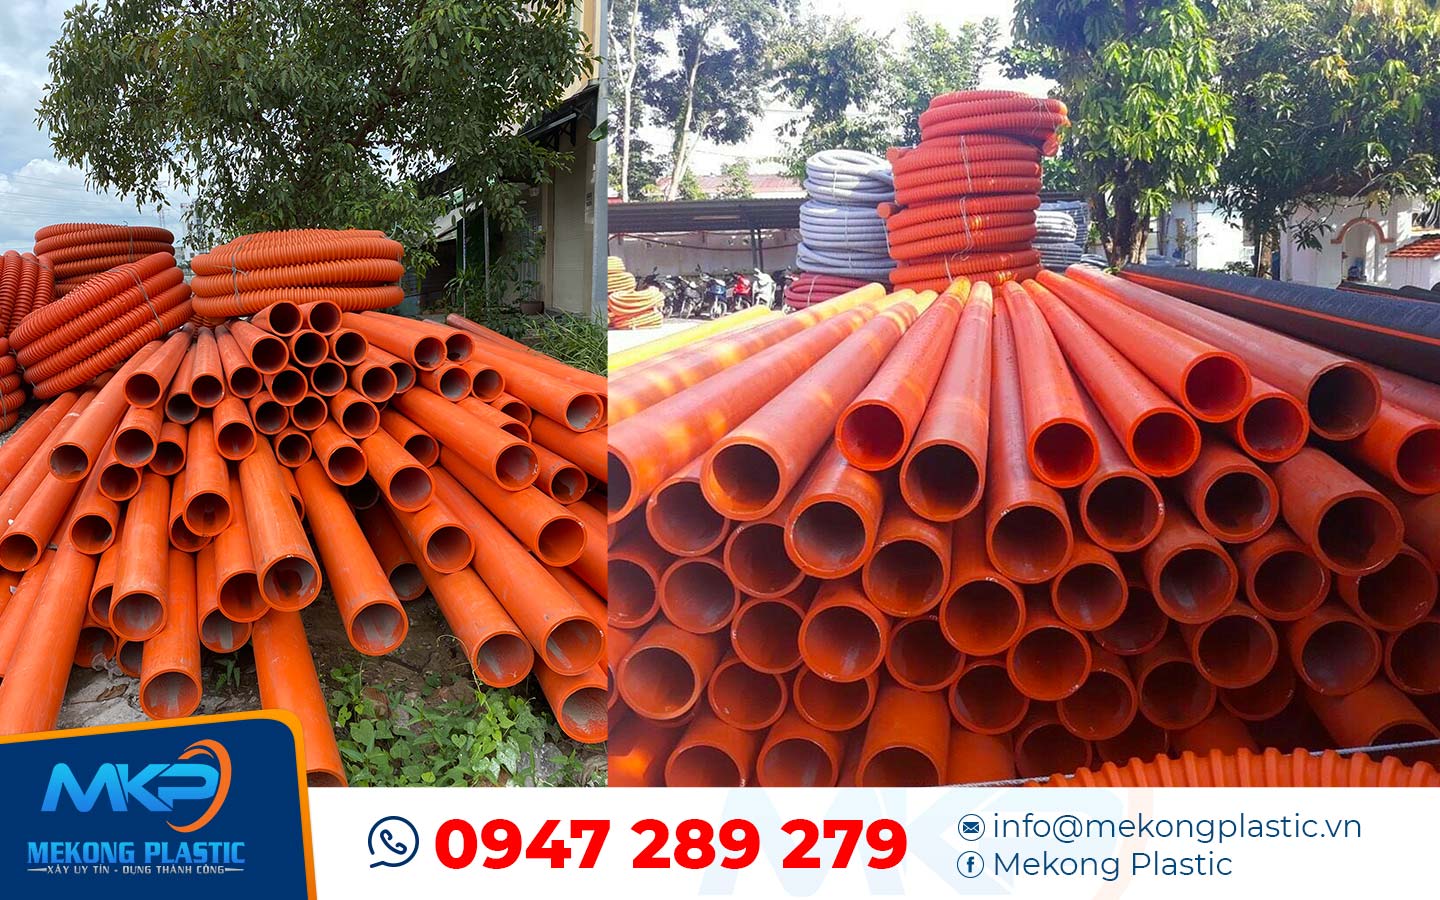 Lựa chọn ống nhựa HDPE hay ống nhựa PVC cho công trình